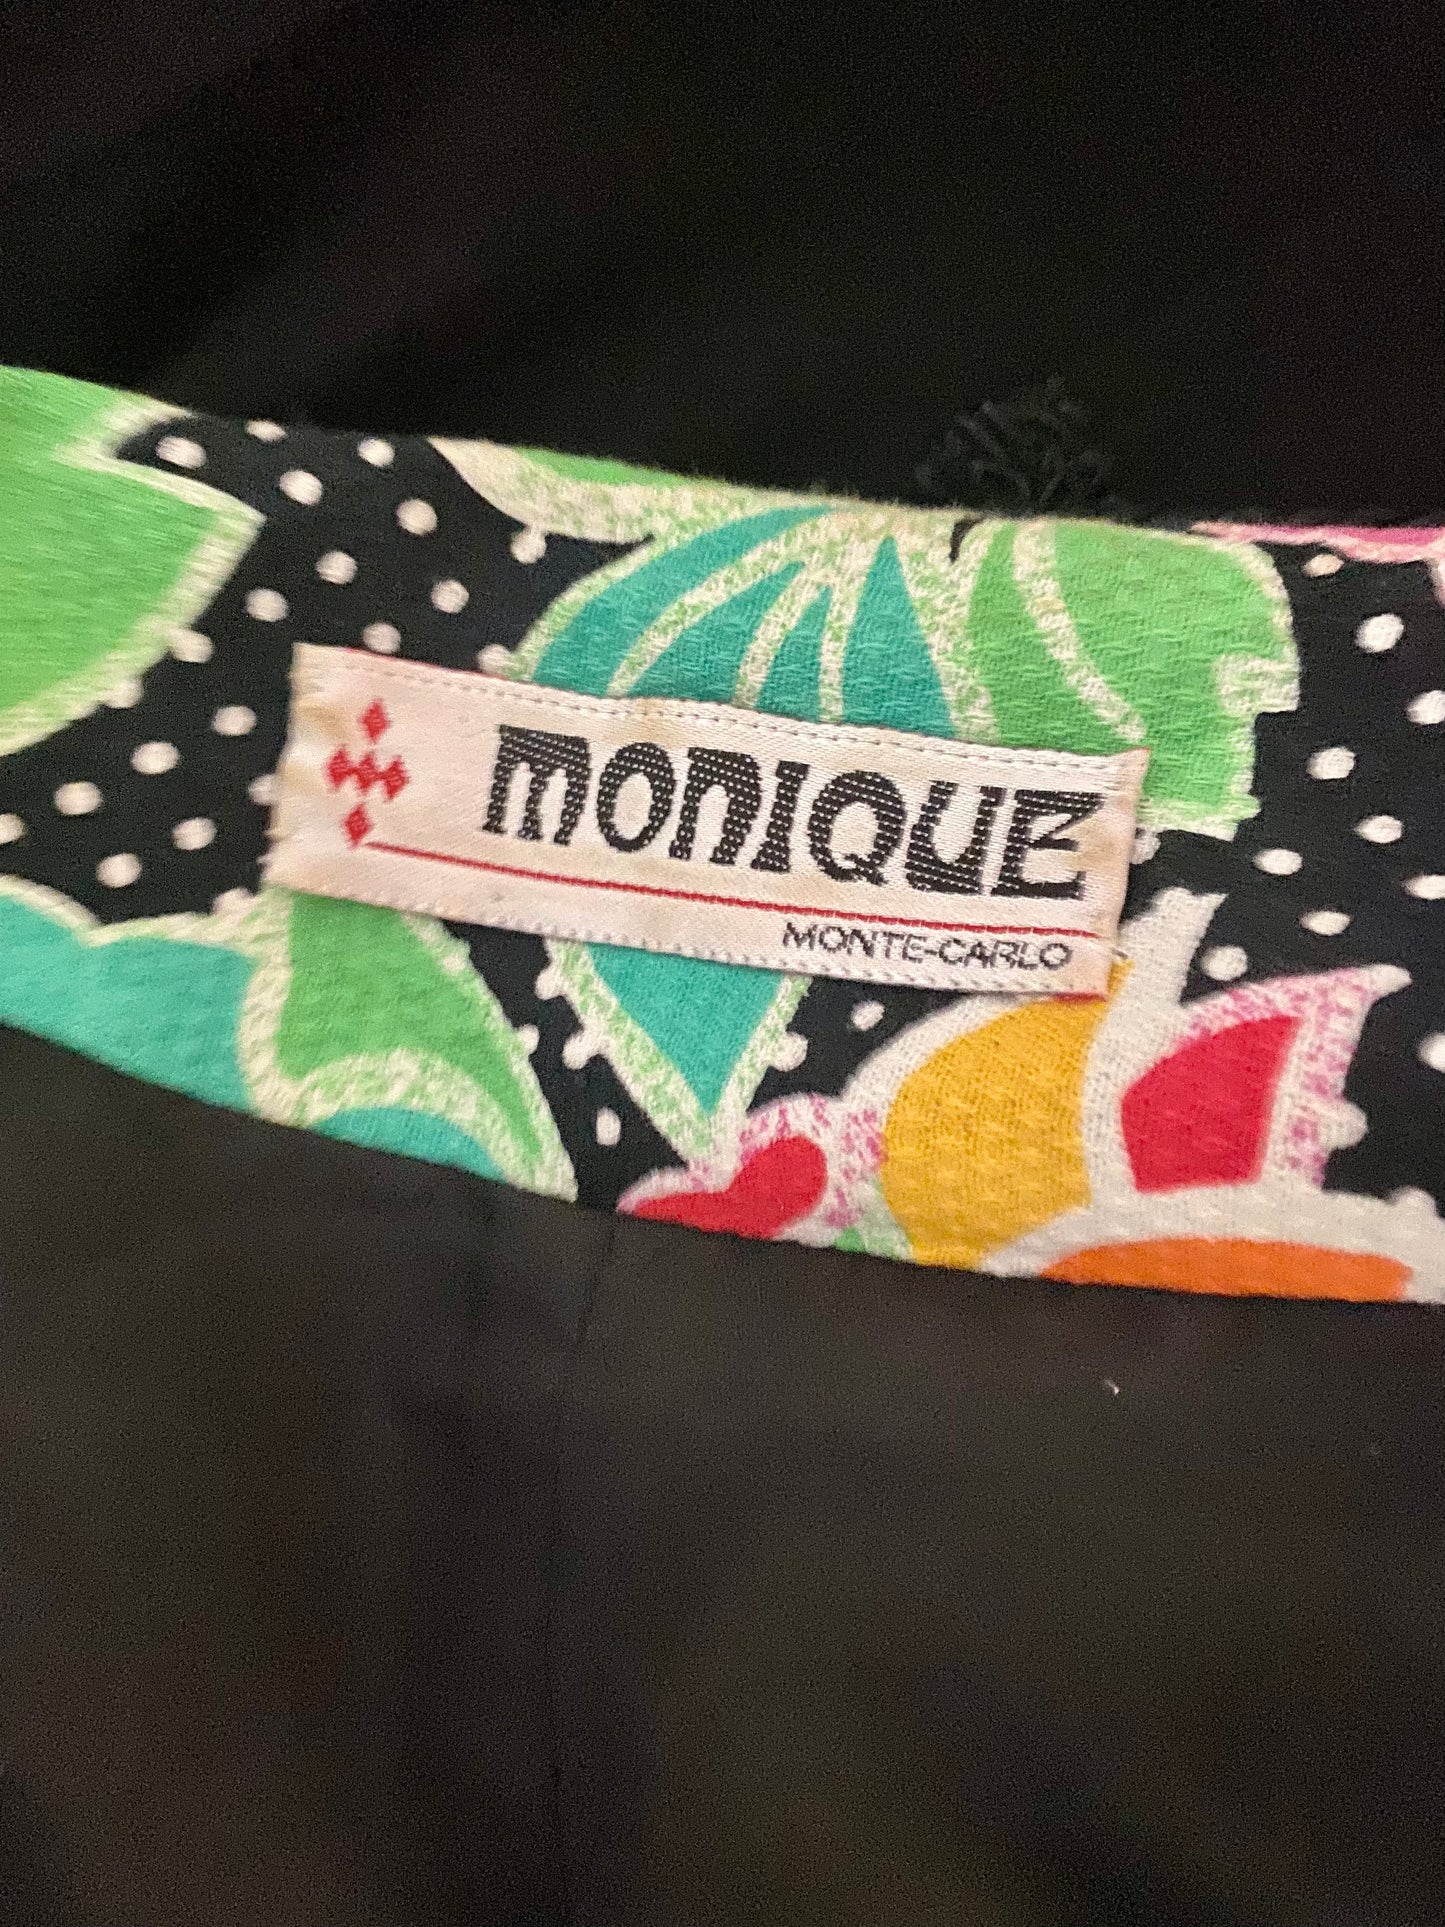 Veste Monique Monte-Carlo